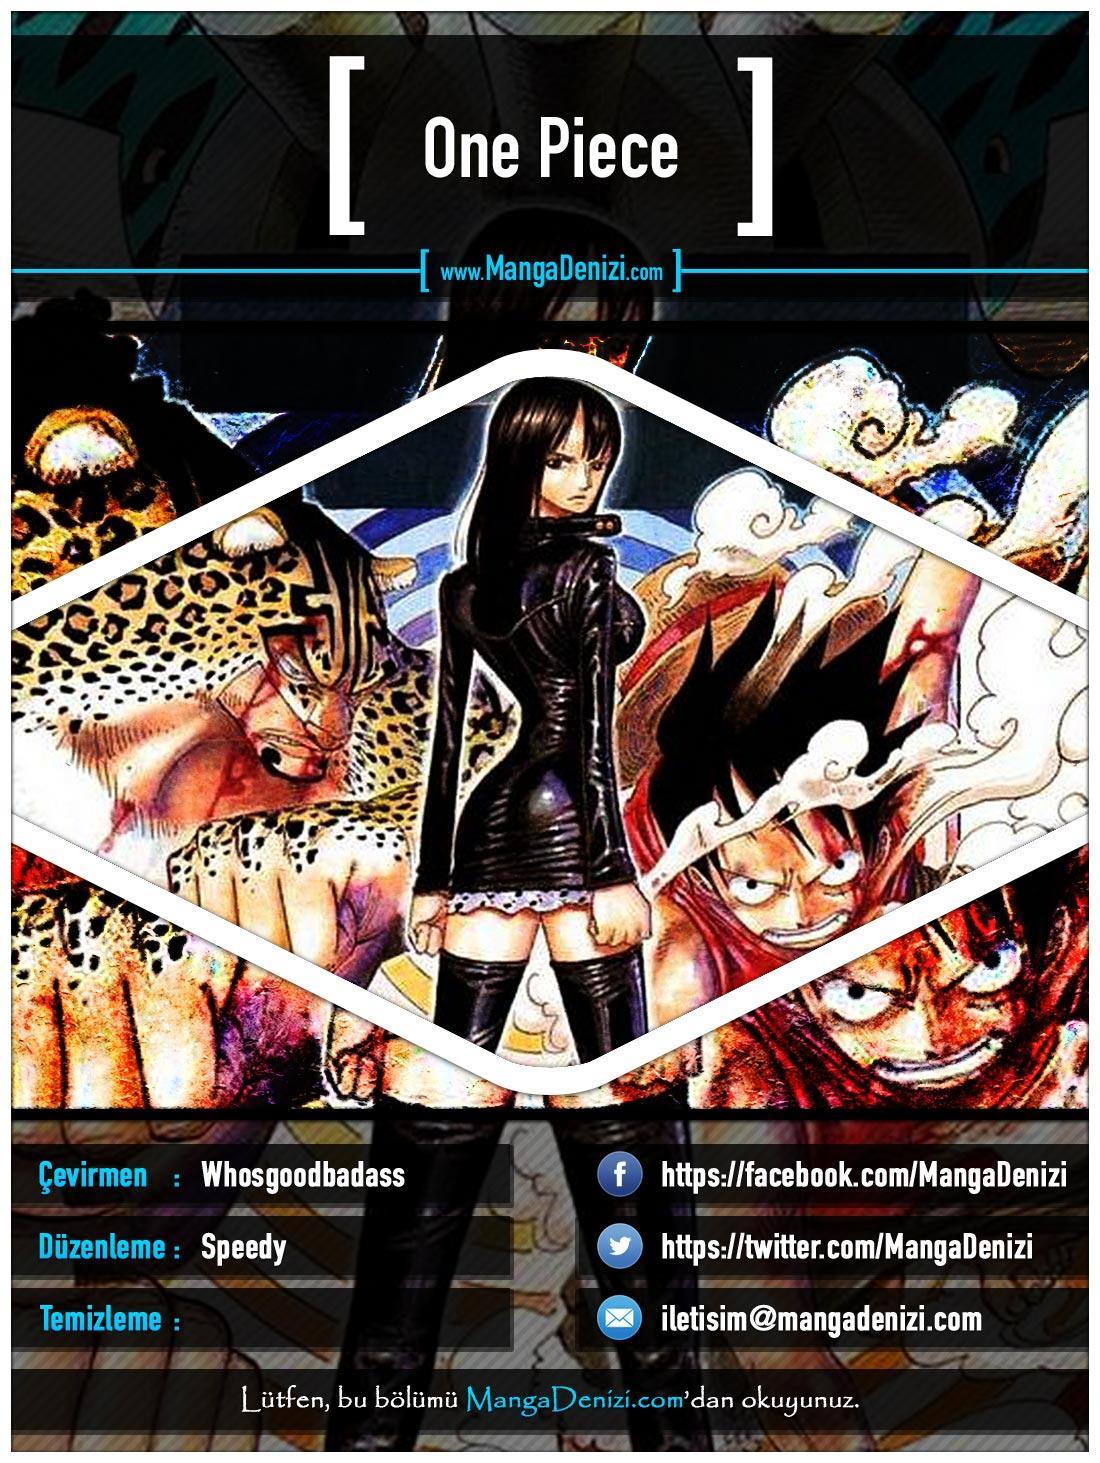 One Piece [Renkli] mangasının 0428 bölümünün 1. sayfasını okuyorsunuz.